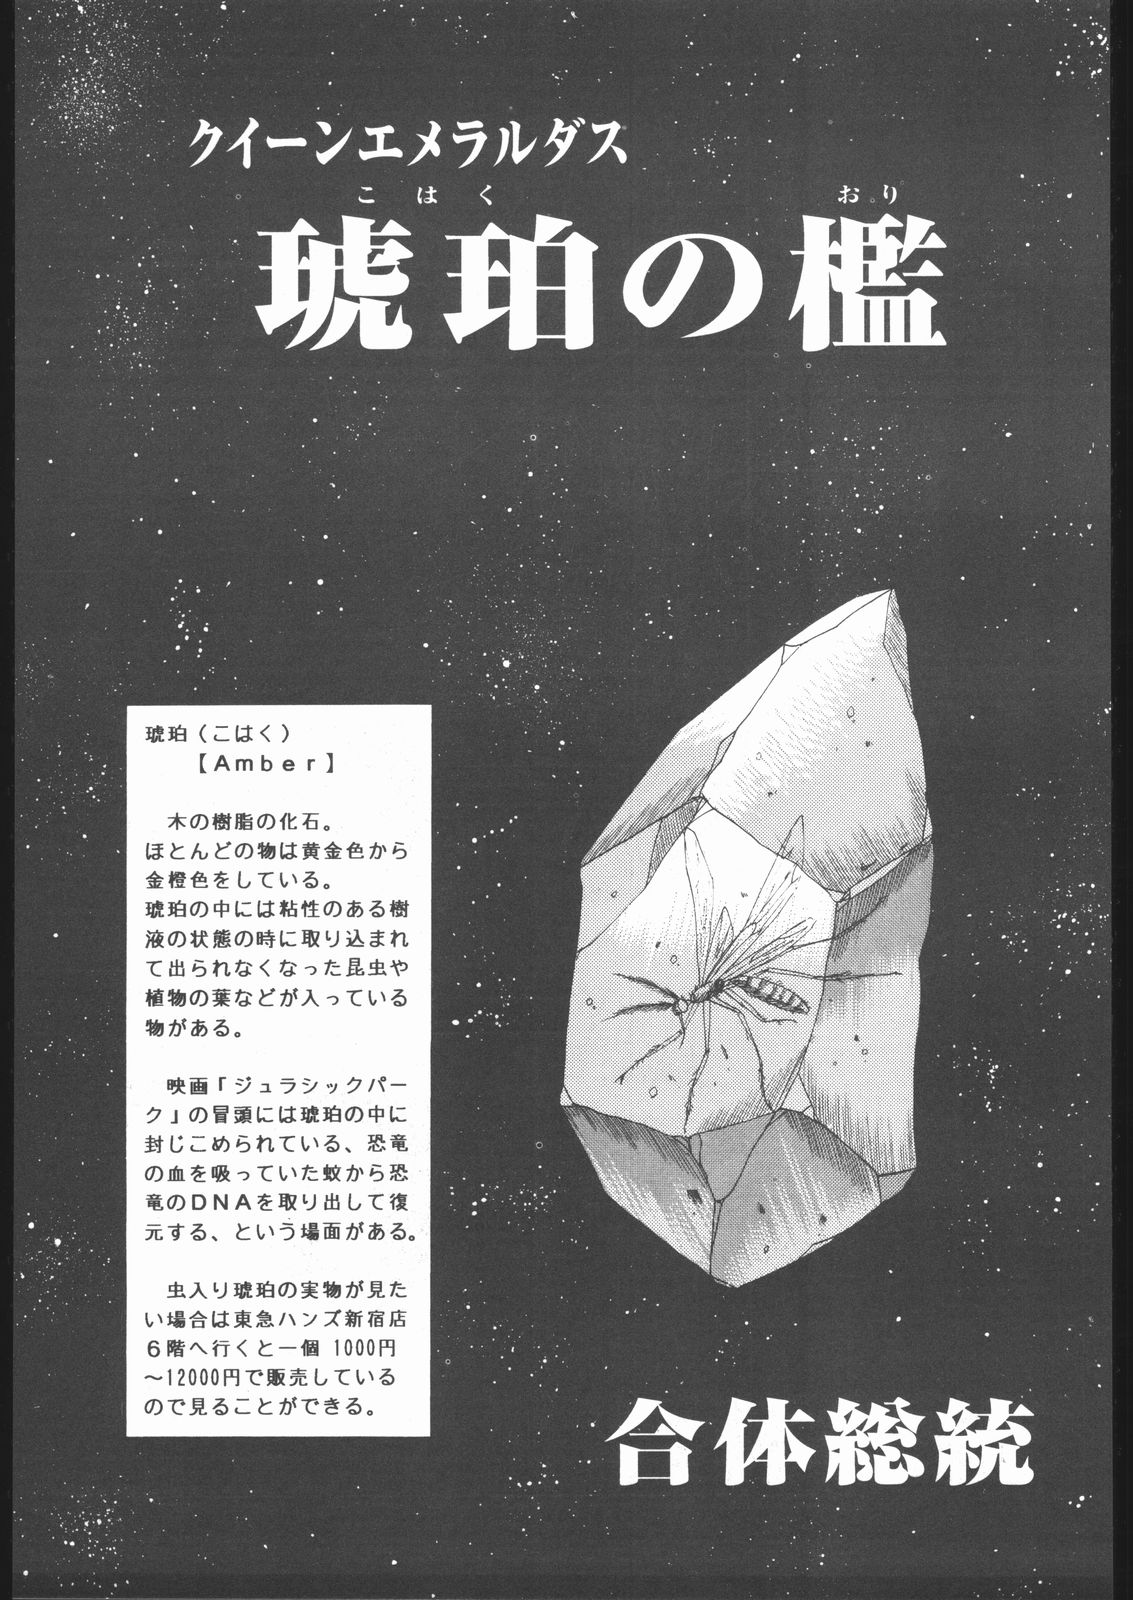 (C55) [RAT TAIL (よろず)] TAIL-MEN LEIJI MATSUMOTO BOOK (よろず)